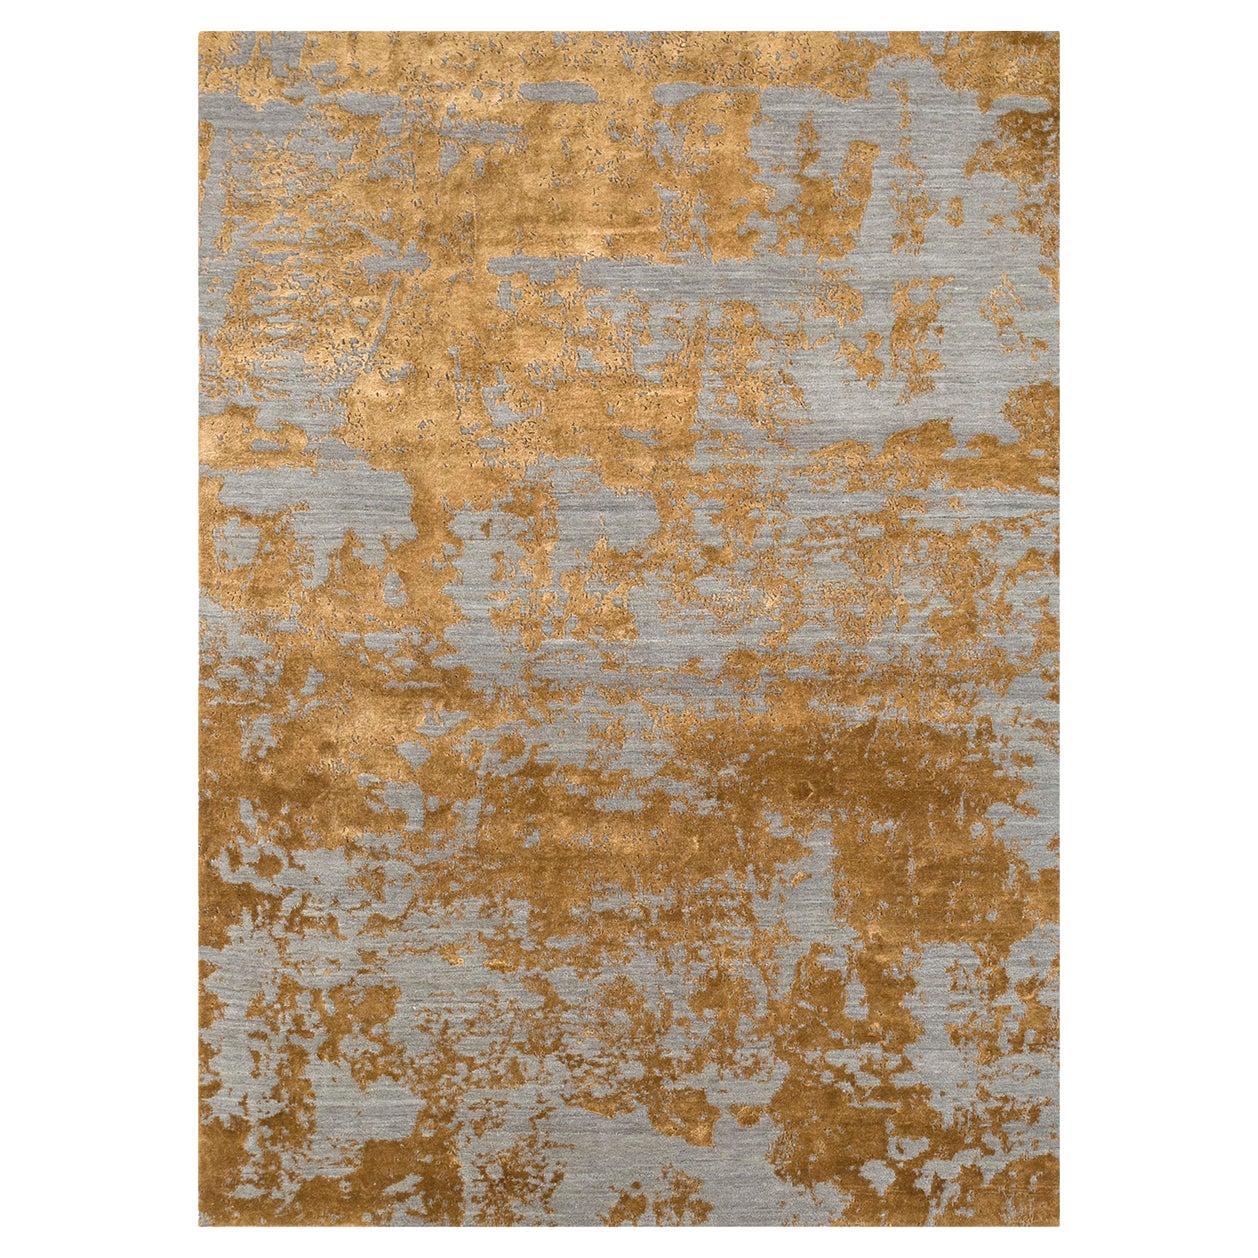 Flake-Teppich von Rural Weavers, geknüpft, Wolle, Bambusseide, 270x360cm